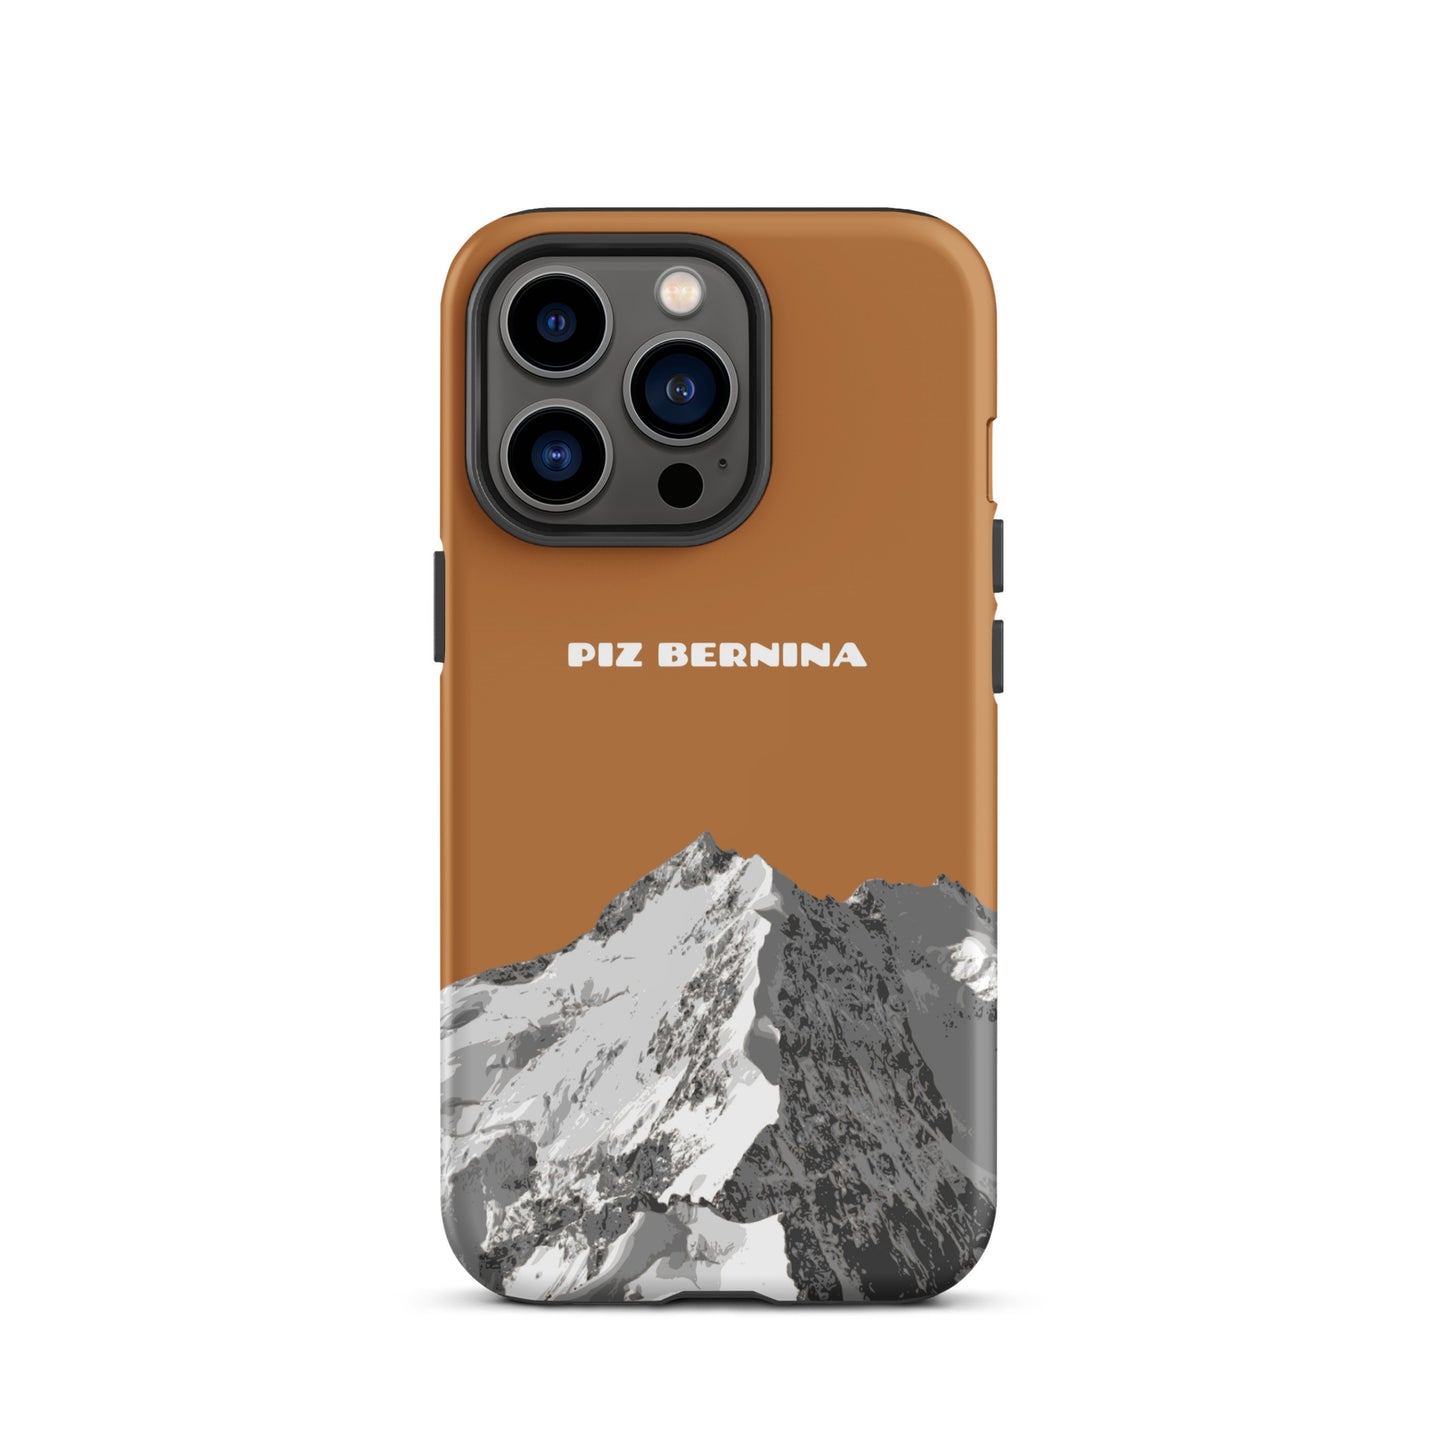 Hülle für das iPhone 13 Pro von Apple in der Farbe Kupfer, dass den Piz Bernina in Graubünden zeigt.